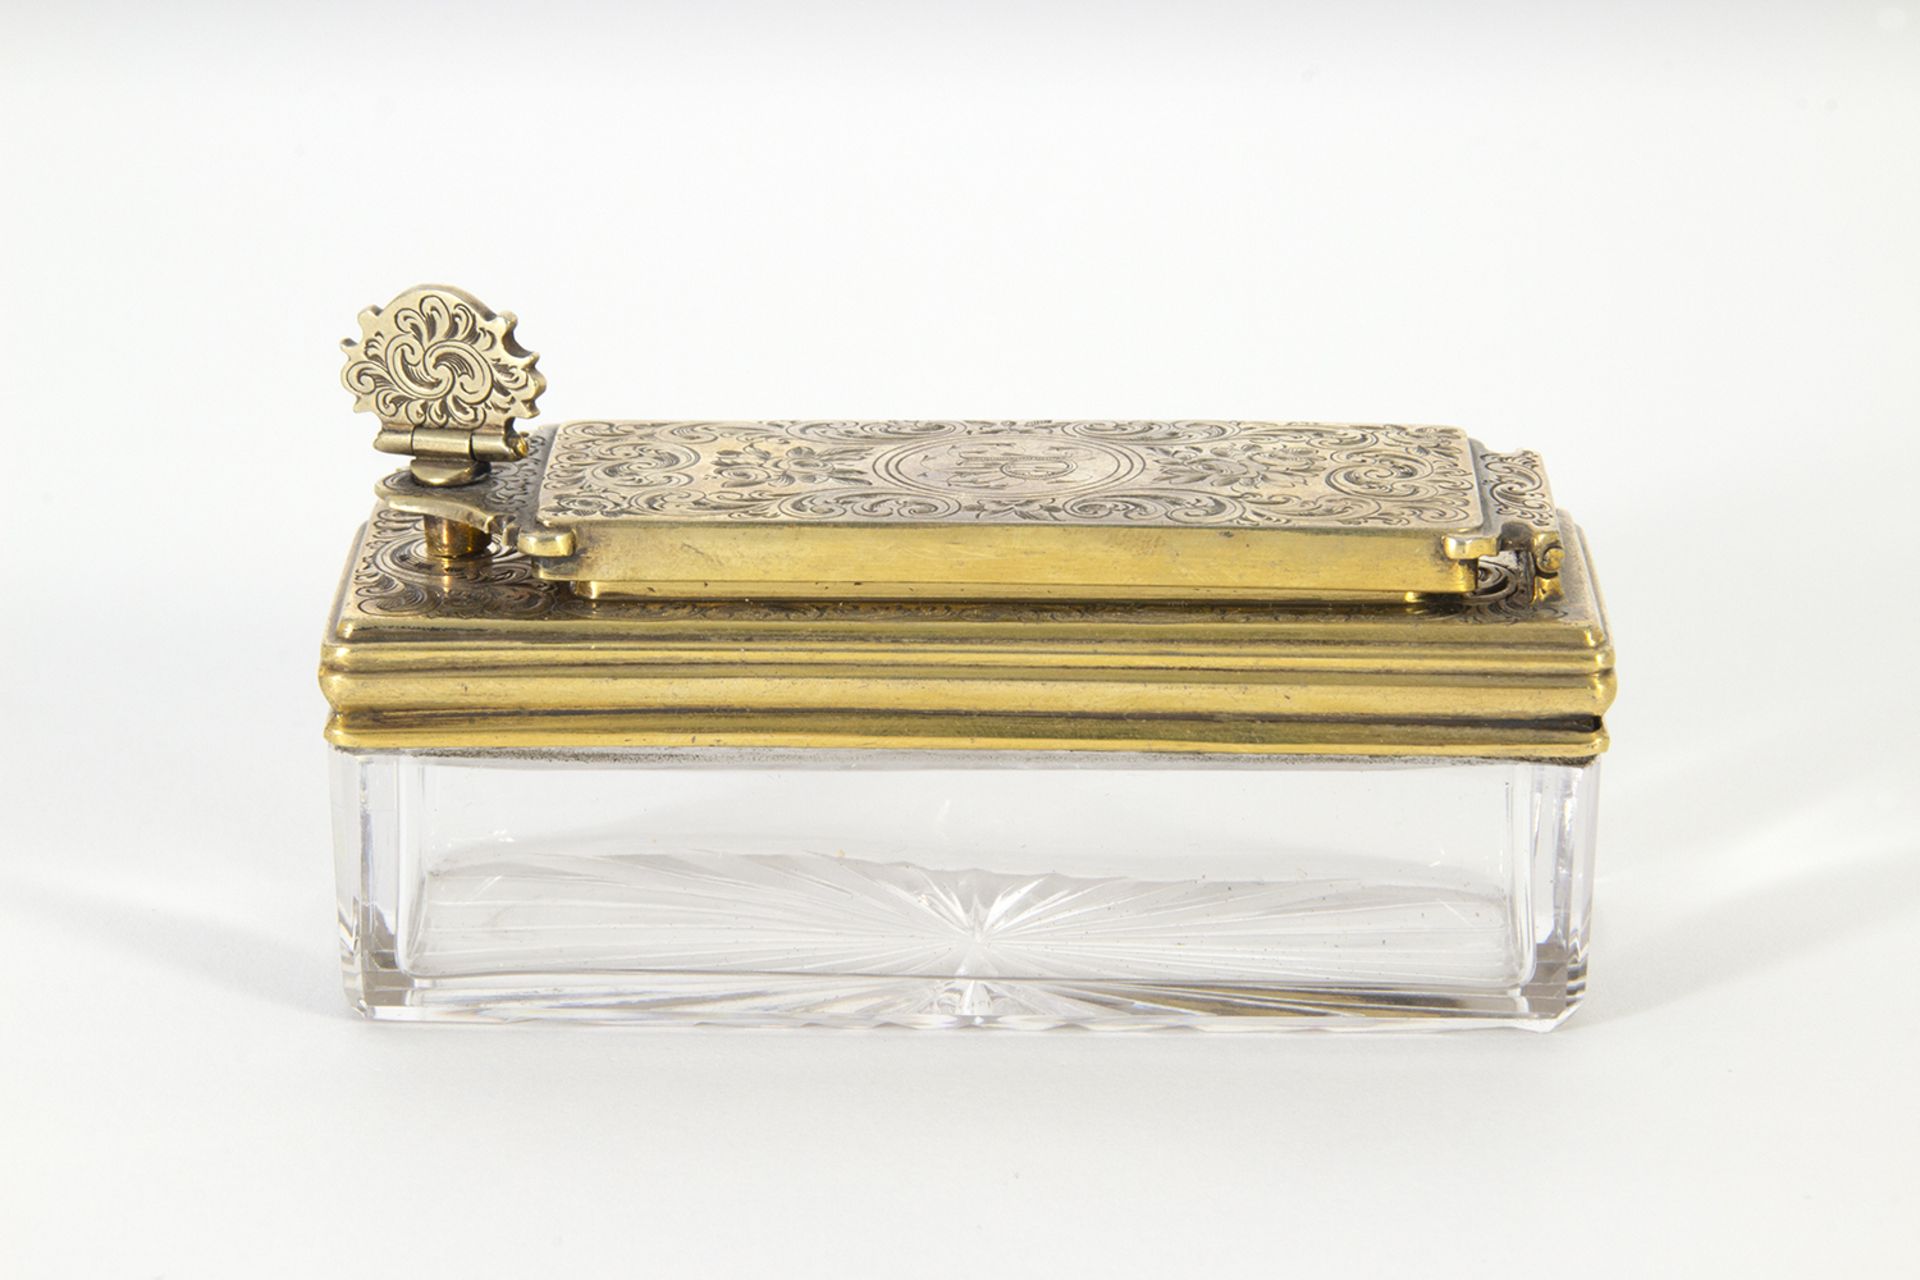 Caja tintero en metal dorado y cristal tallado con decoración floral y tornapuntas. Iniciales grabad - Image 2 of 5